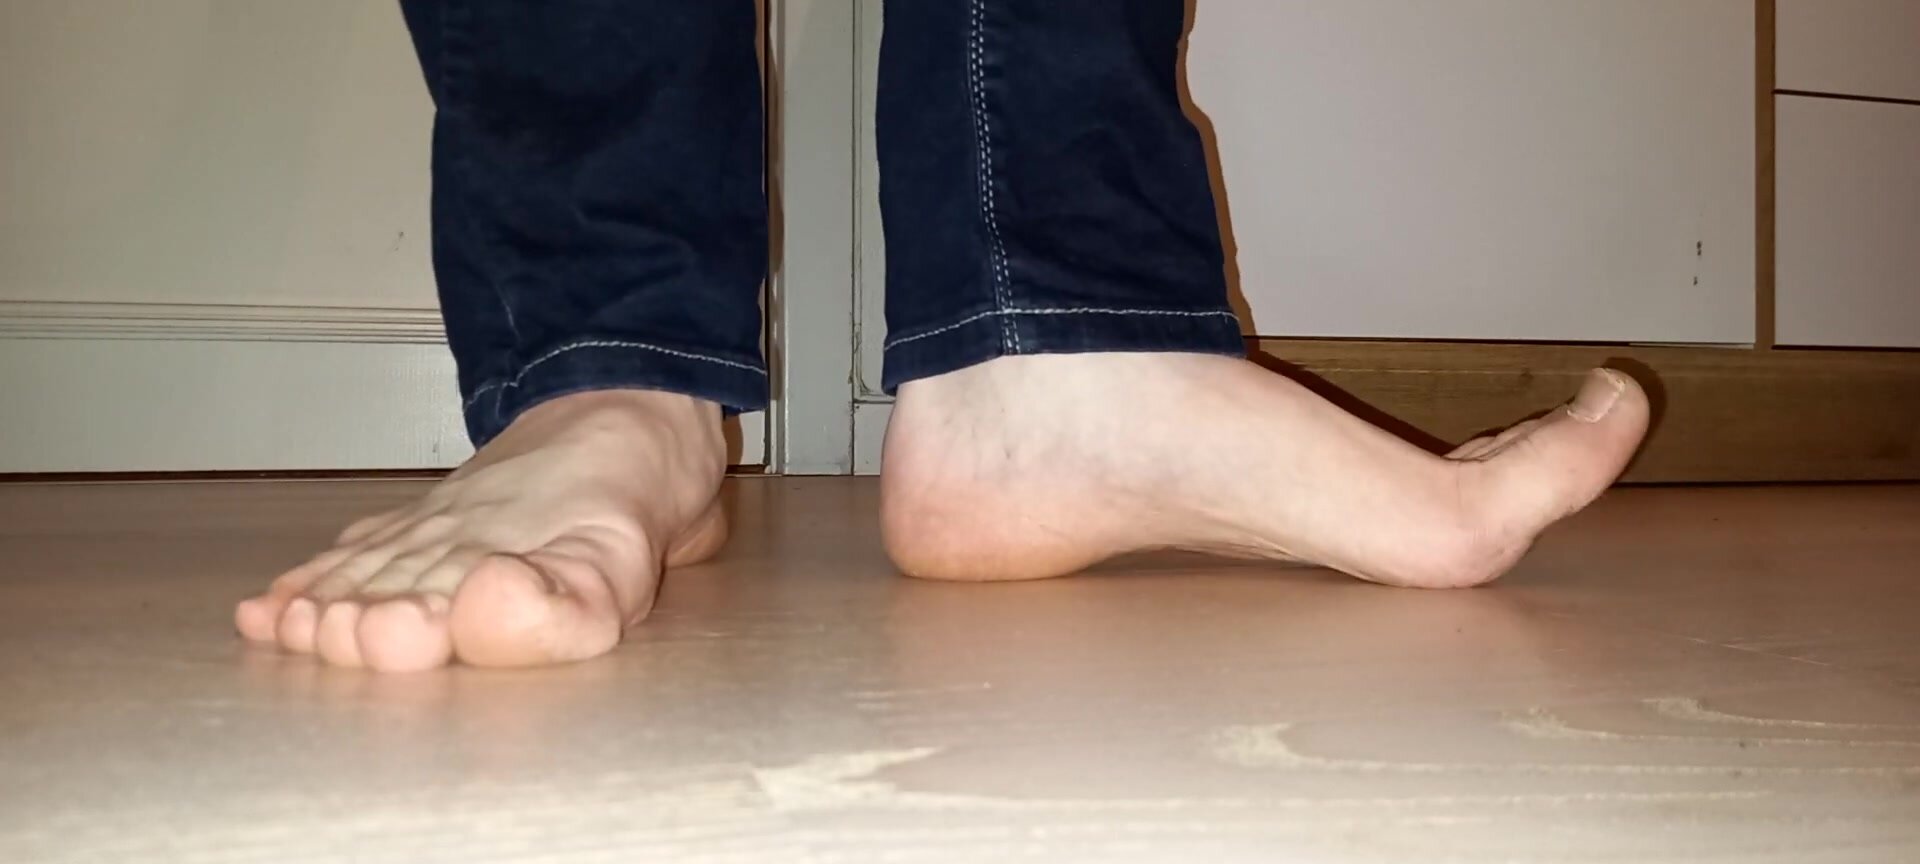 Guys Sexy Feet On The Floor